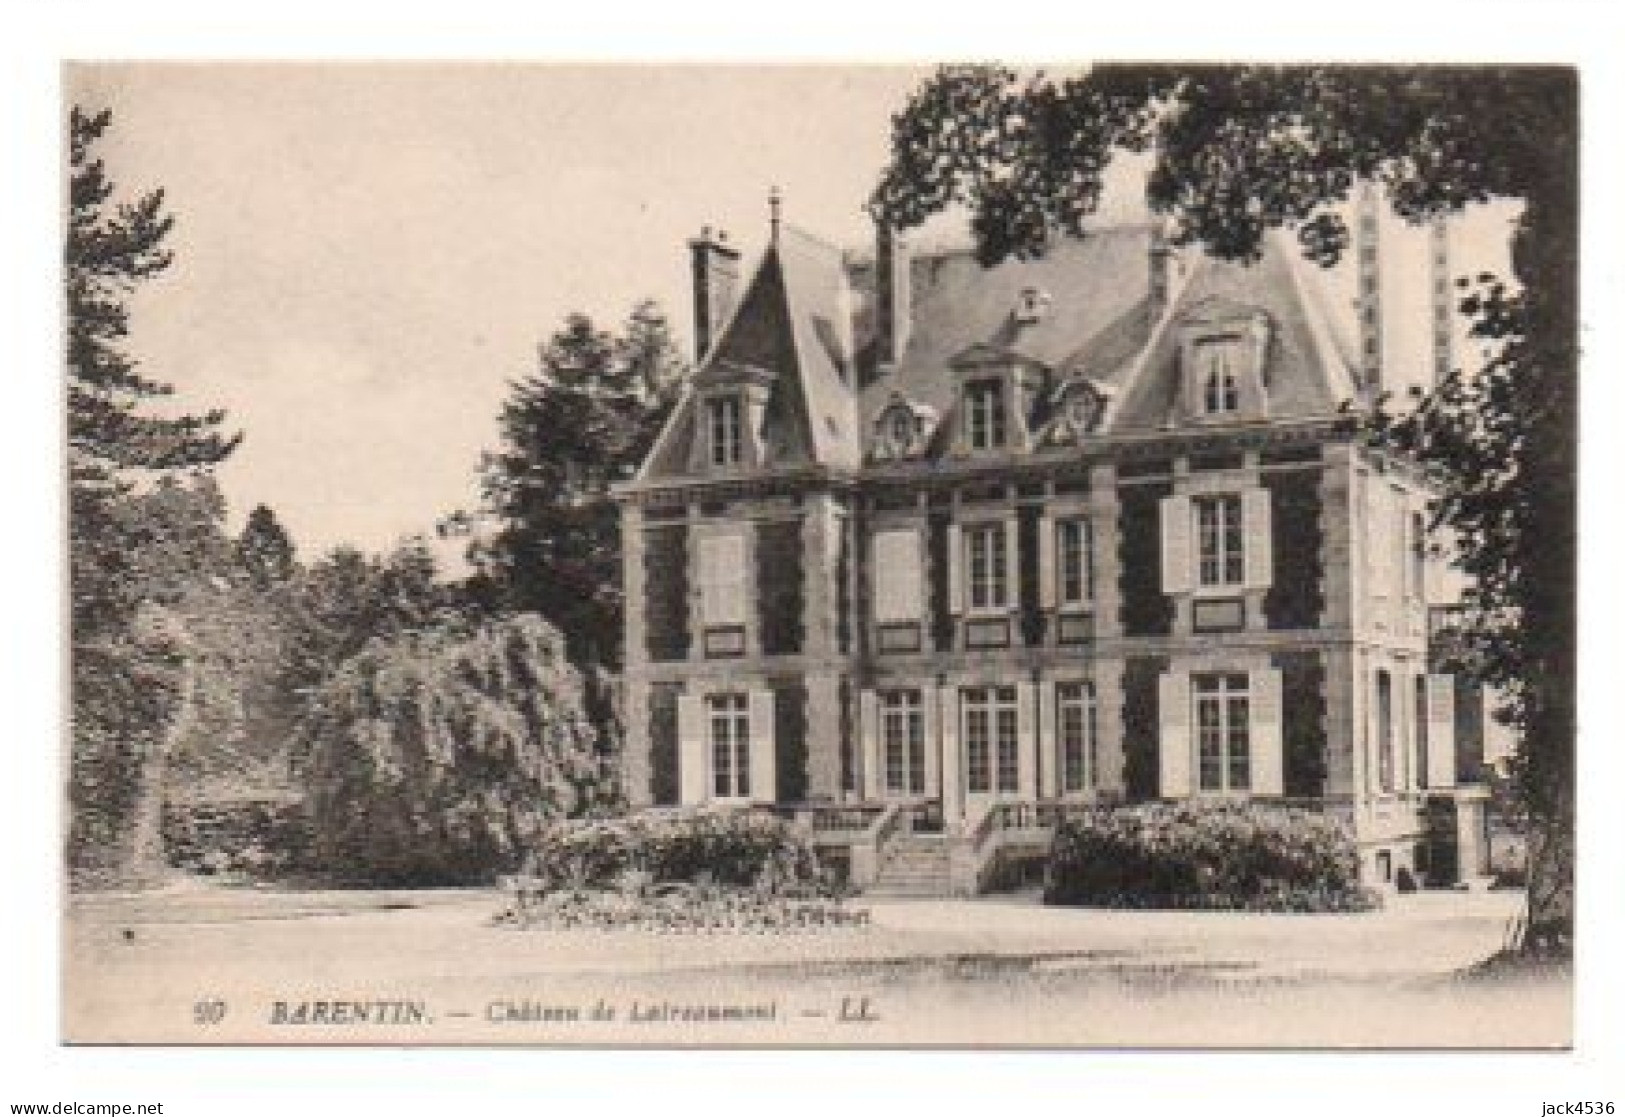 Carte Postale Ancienne - Non Circulé - Dép. 76 - BARENTIN - Château De LAITREAUMONT - Barentin